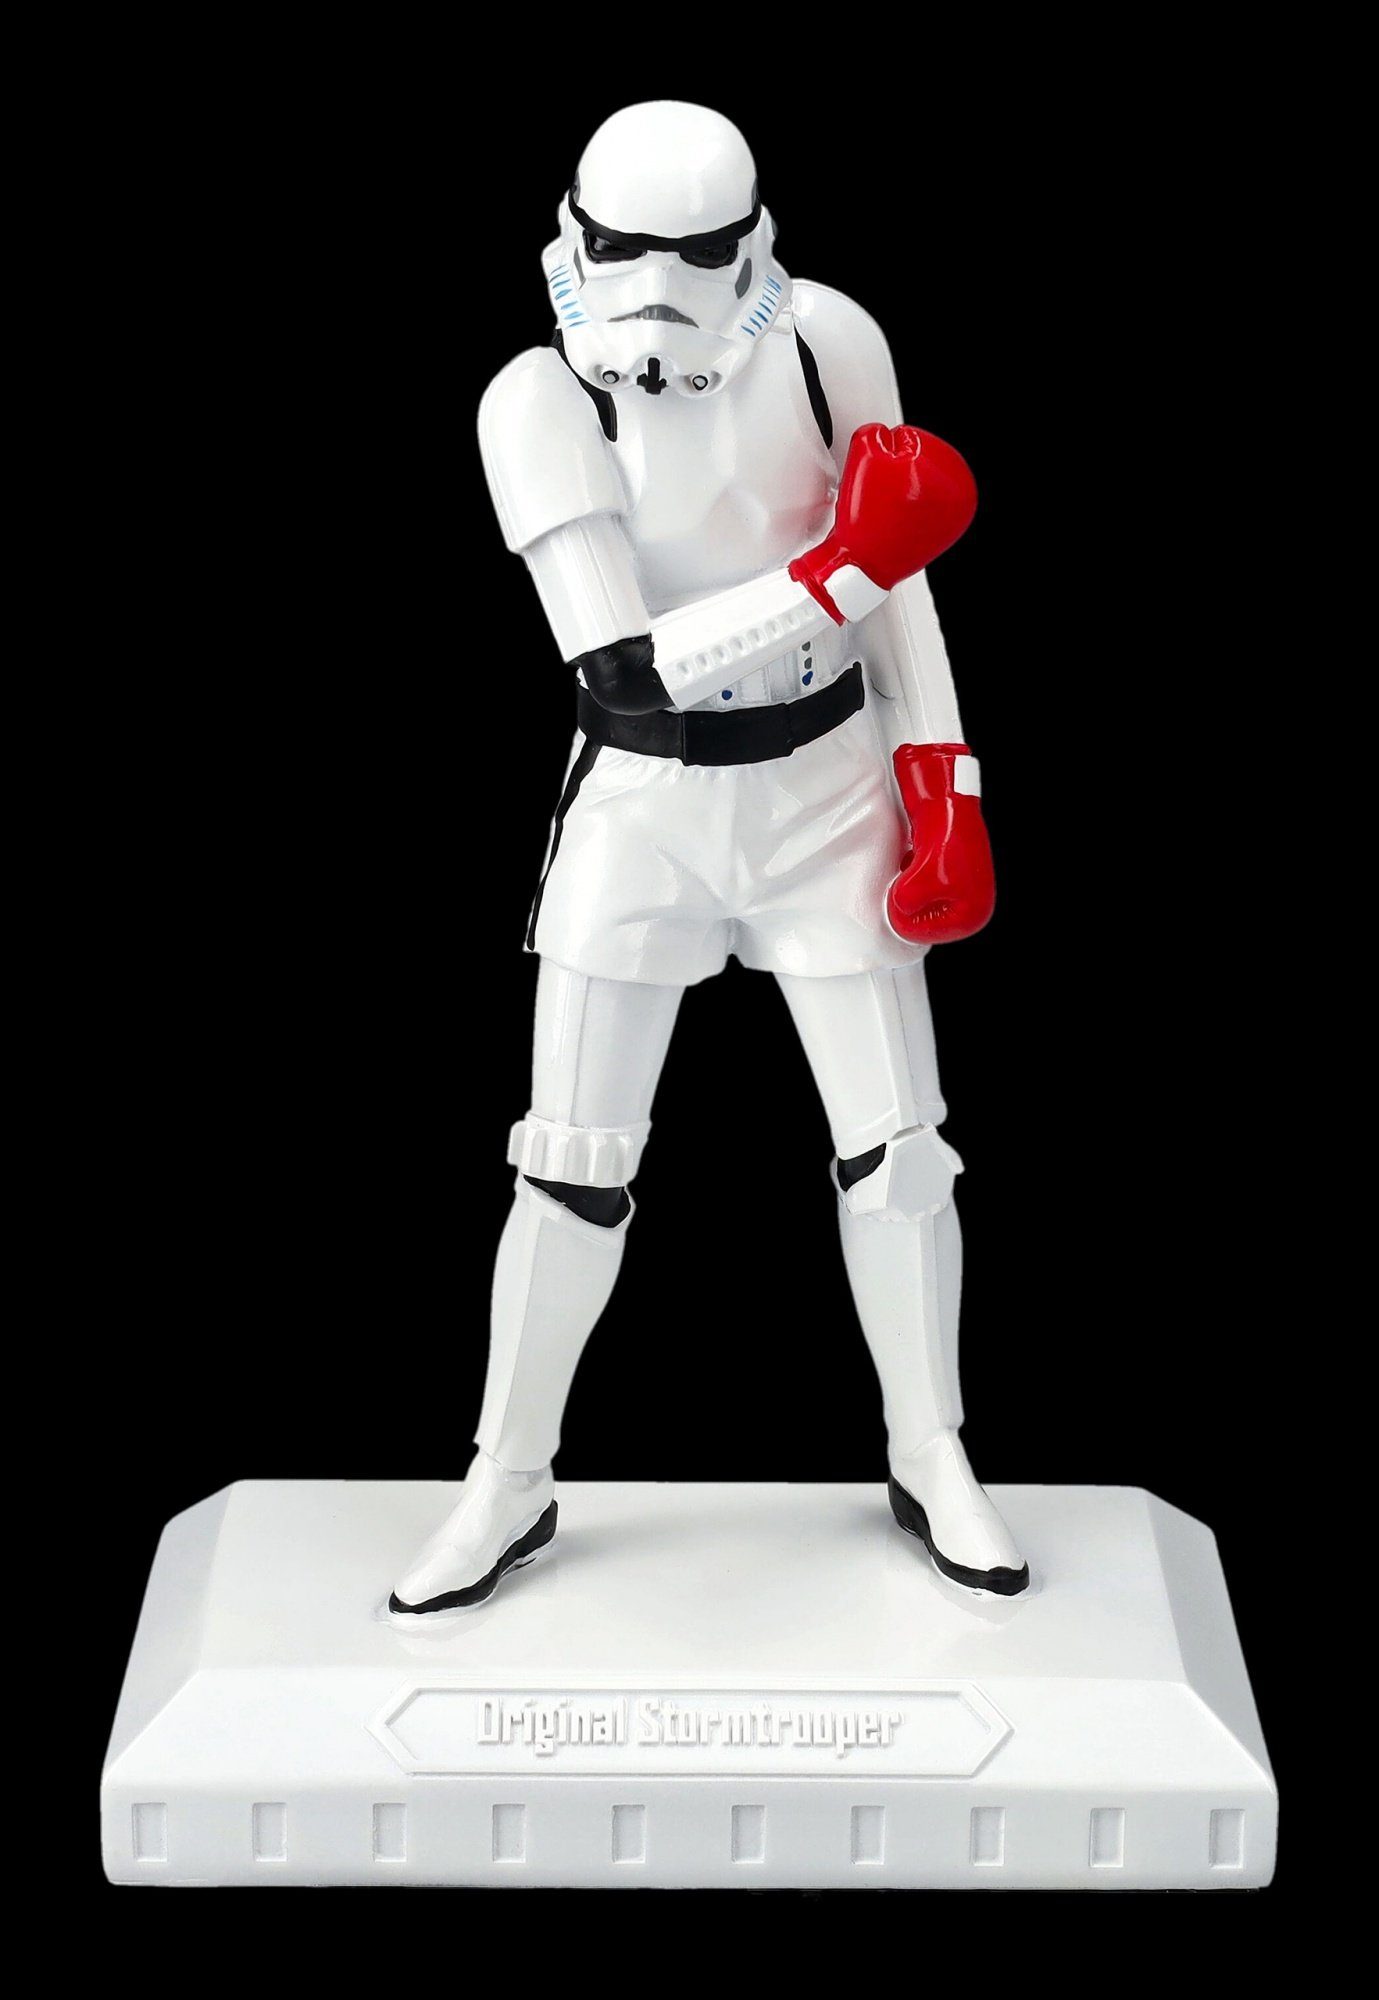 Dekofigur - Sci-Fi The Merchandise Figuren Greatest - Figur Shop GmbH Boxer Stormtrooper Dekofigur